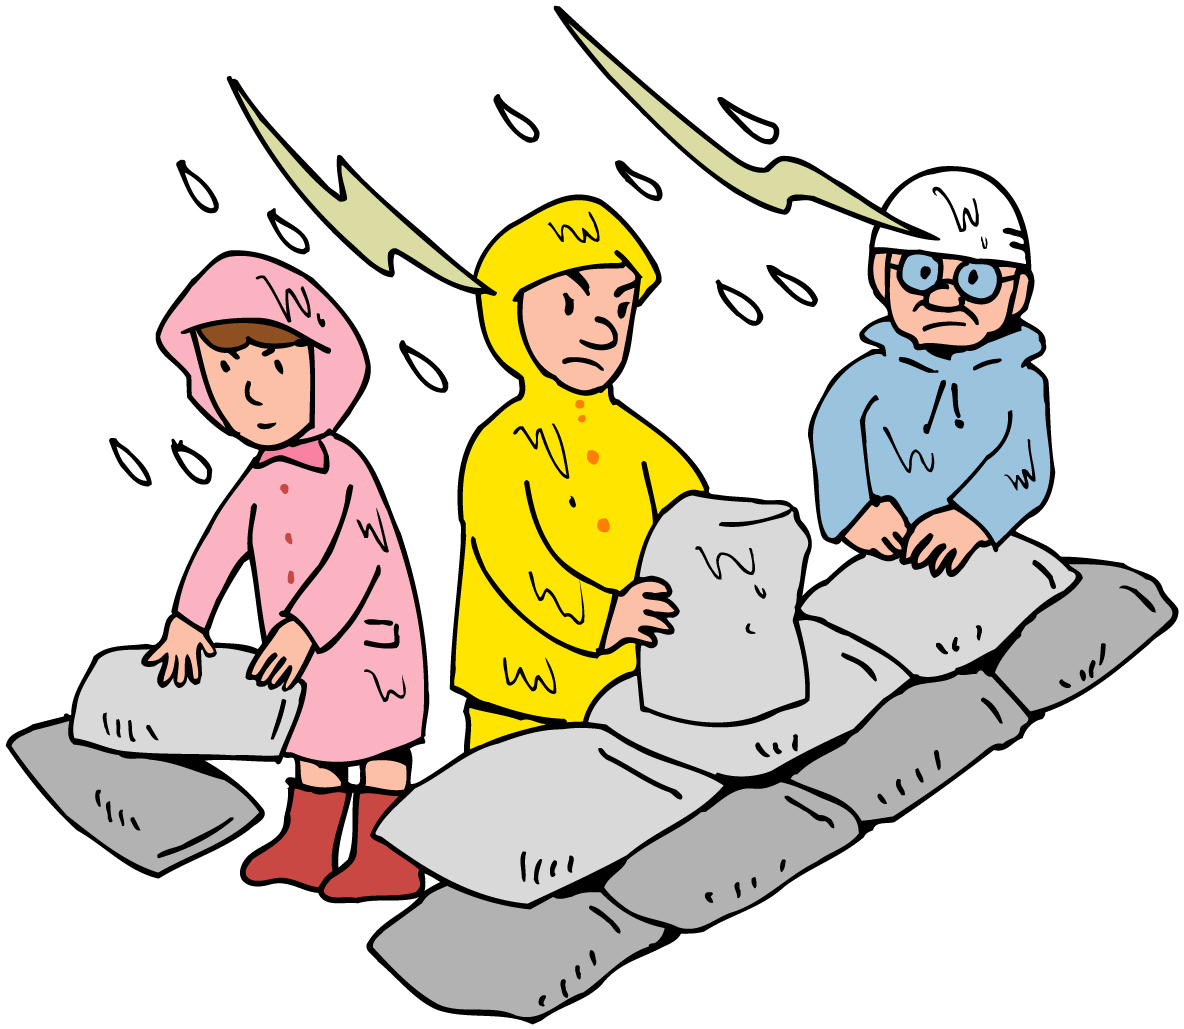 レインコートを着た3人の人が雨の中で土のうを積み上げているイラスト